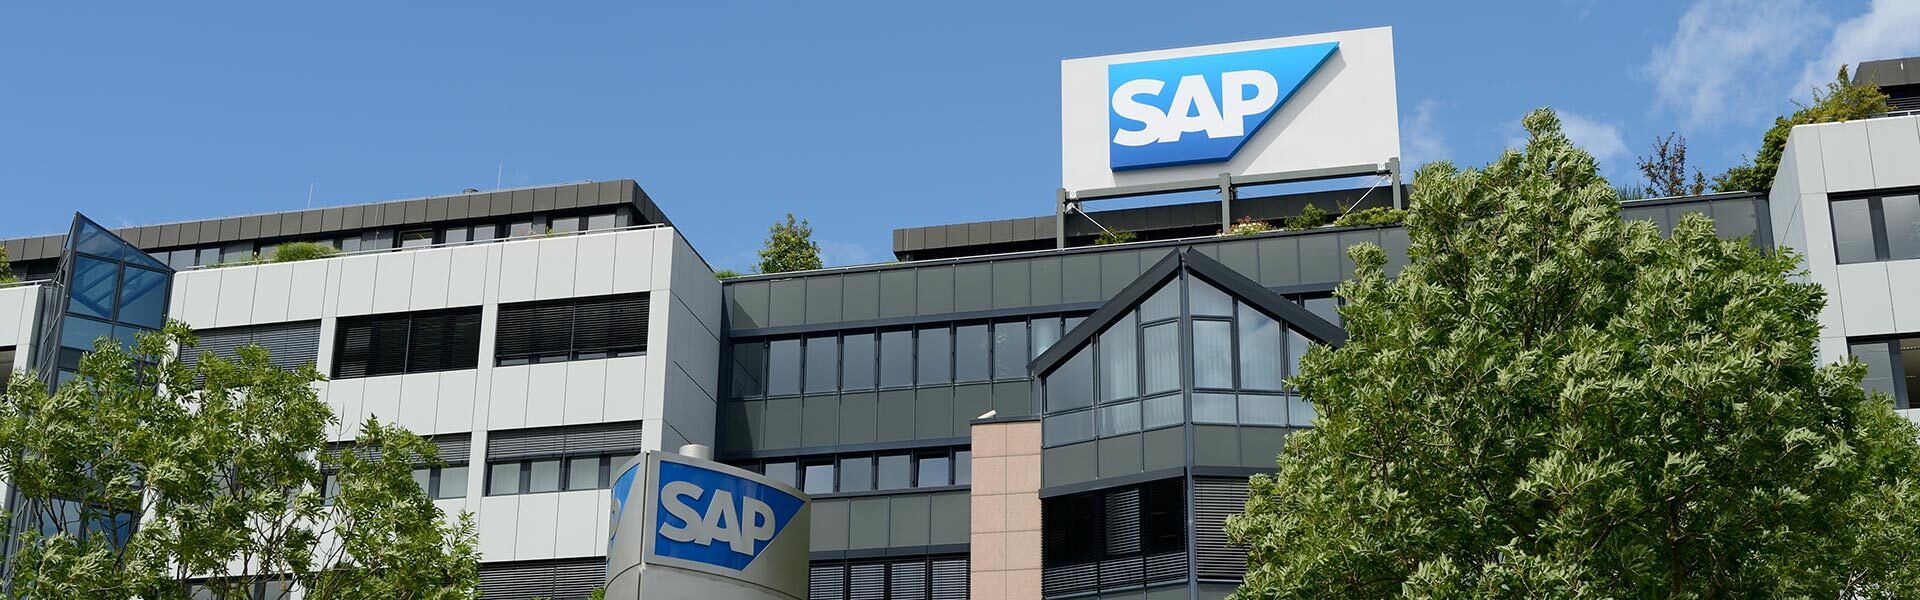 SAP HANA®、独立系リサーチ会社により 「マルチモデルデータプラットフォーム」のリーダーに認定